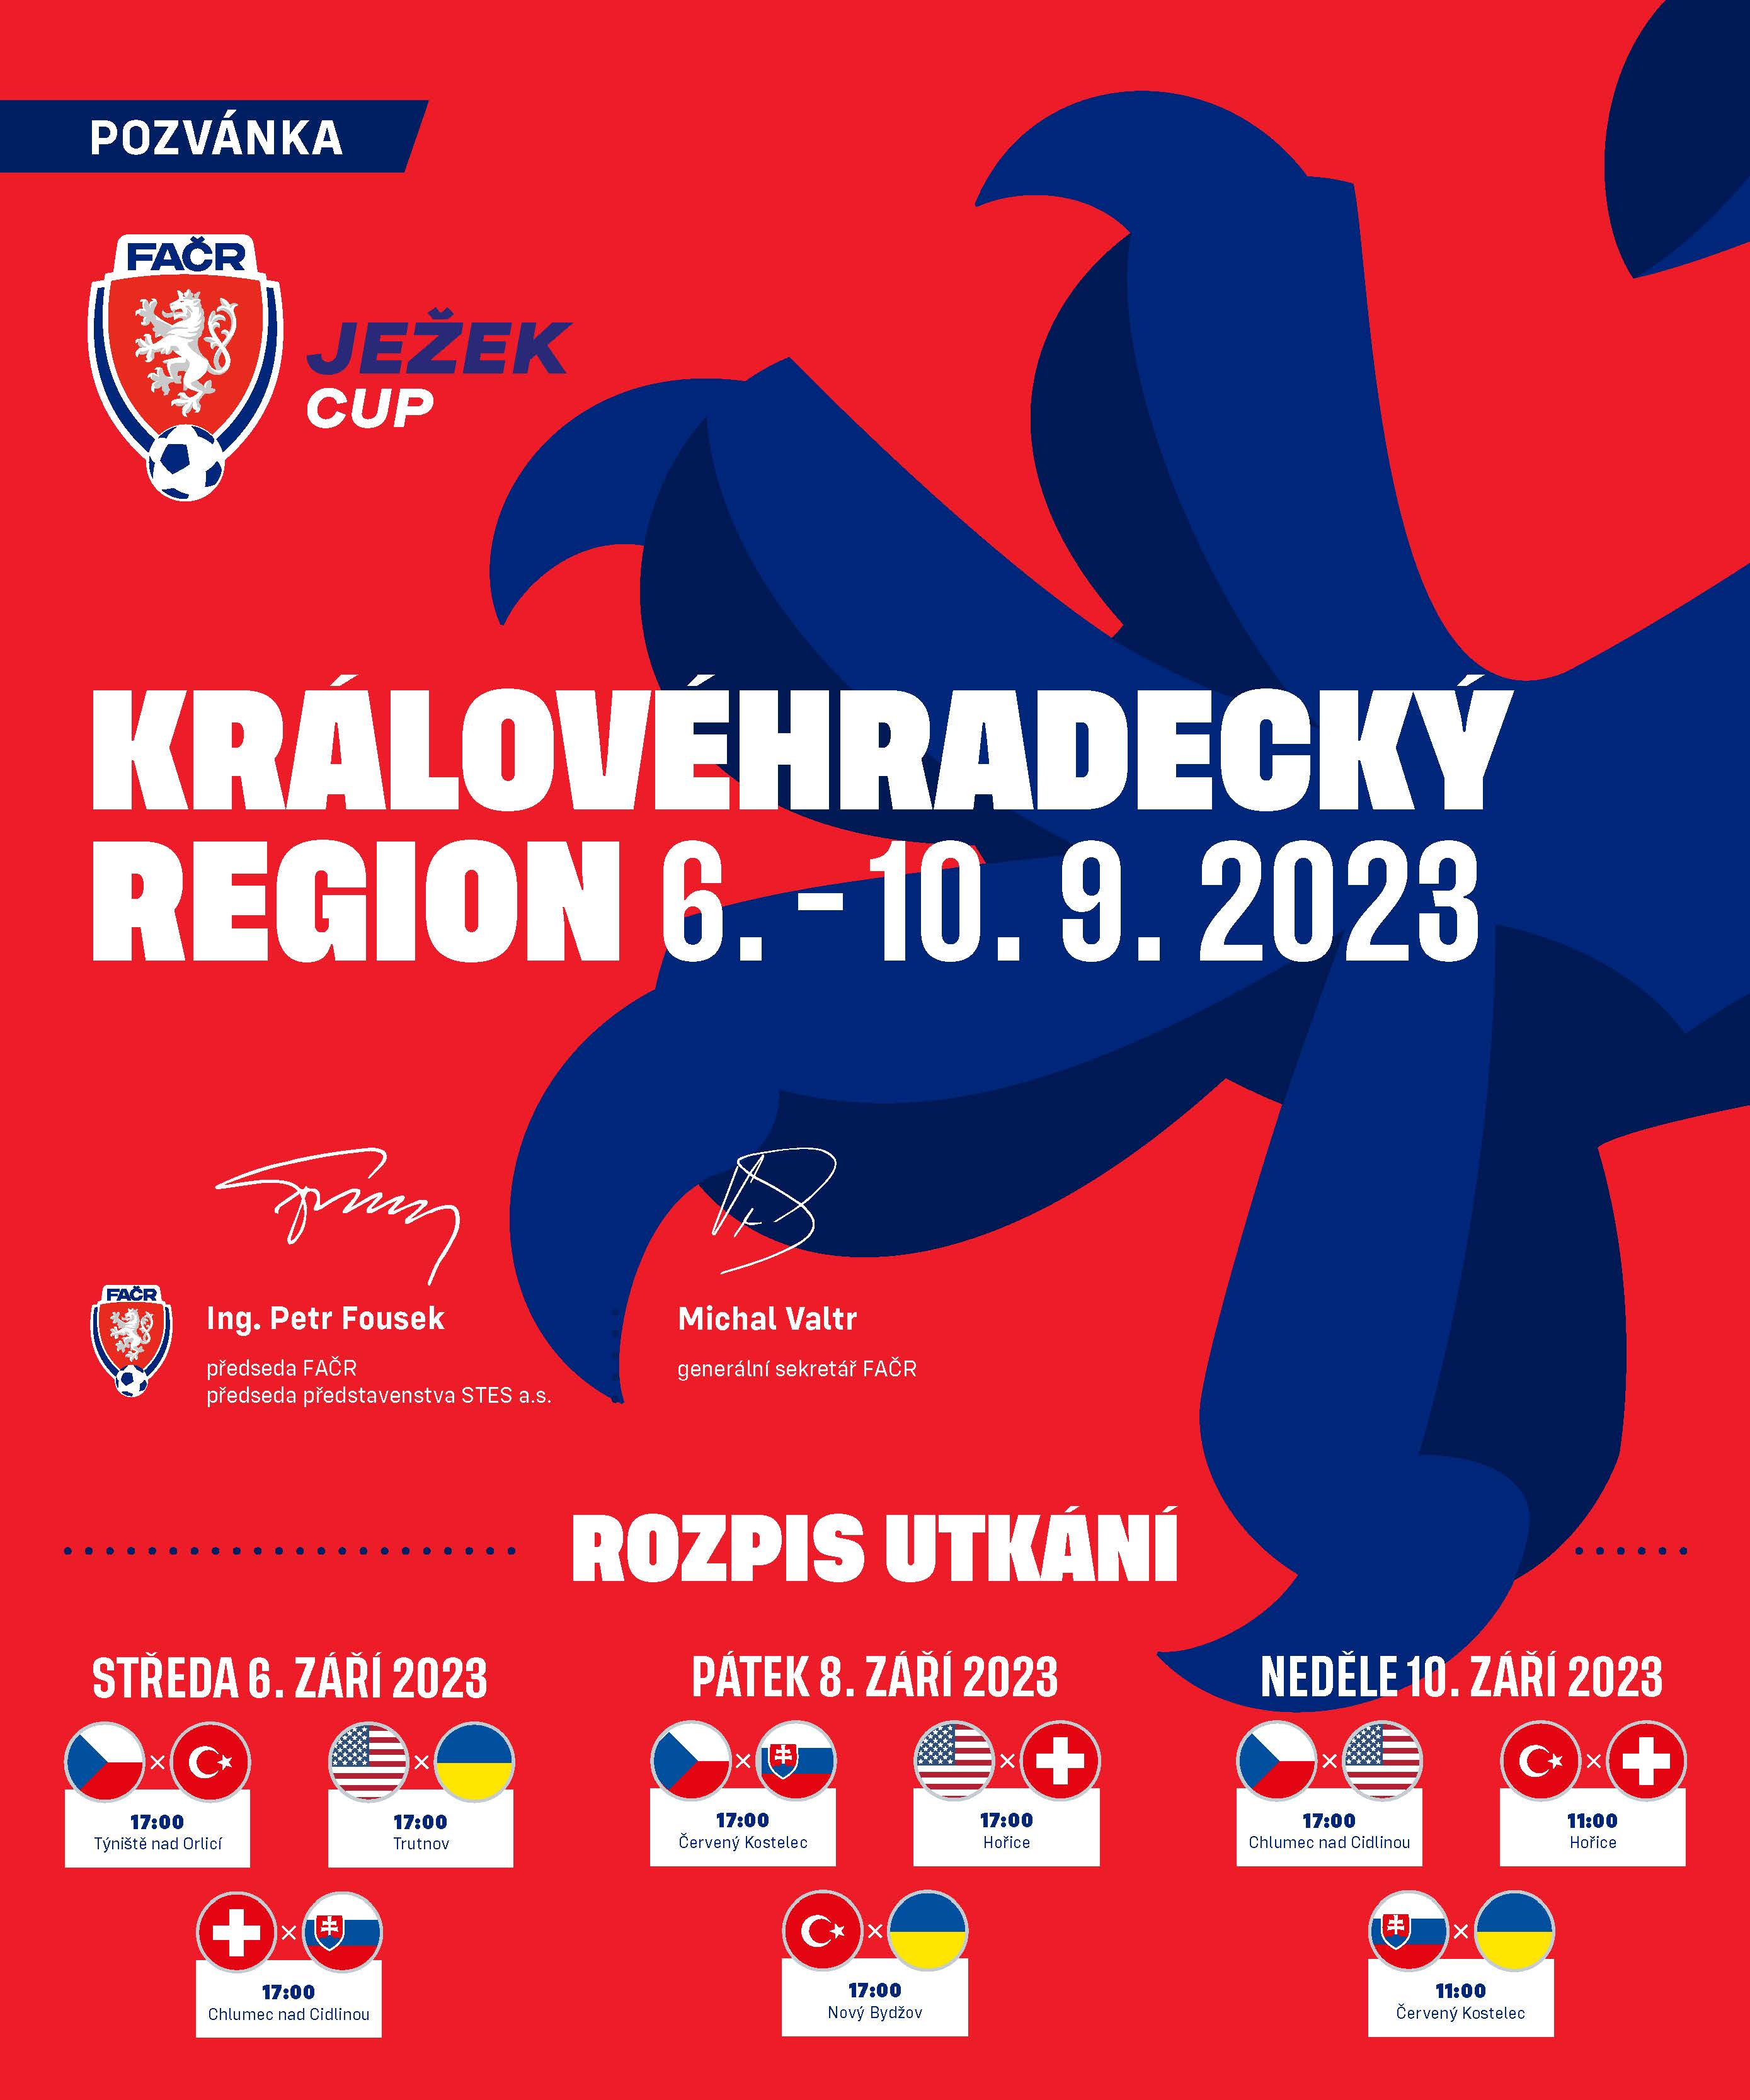 Pozvánka na utkání turnaje Ježek cup 2023 RMSK Cidlina Nový Bydžov